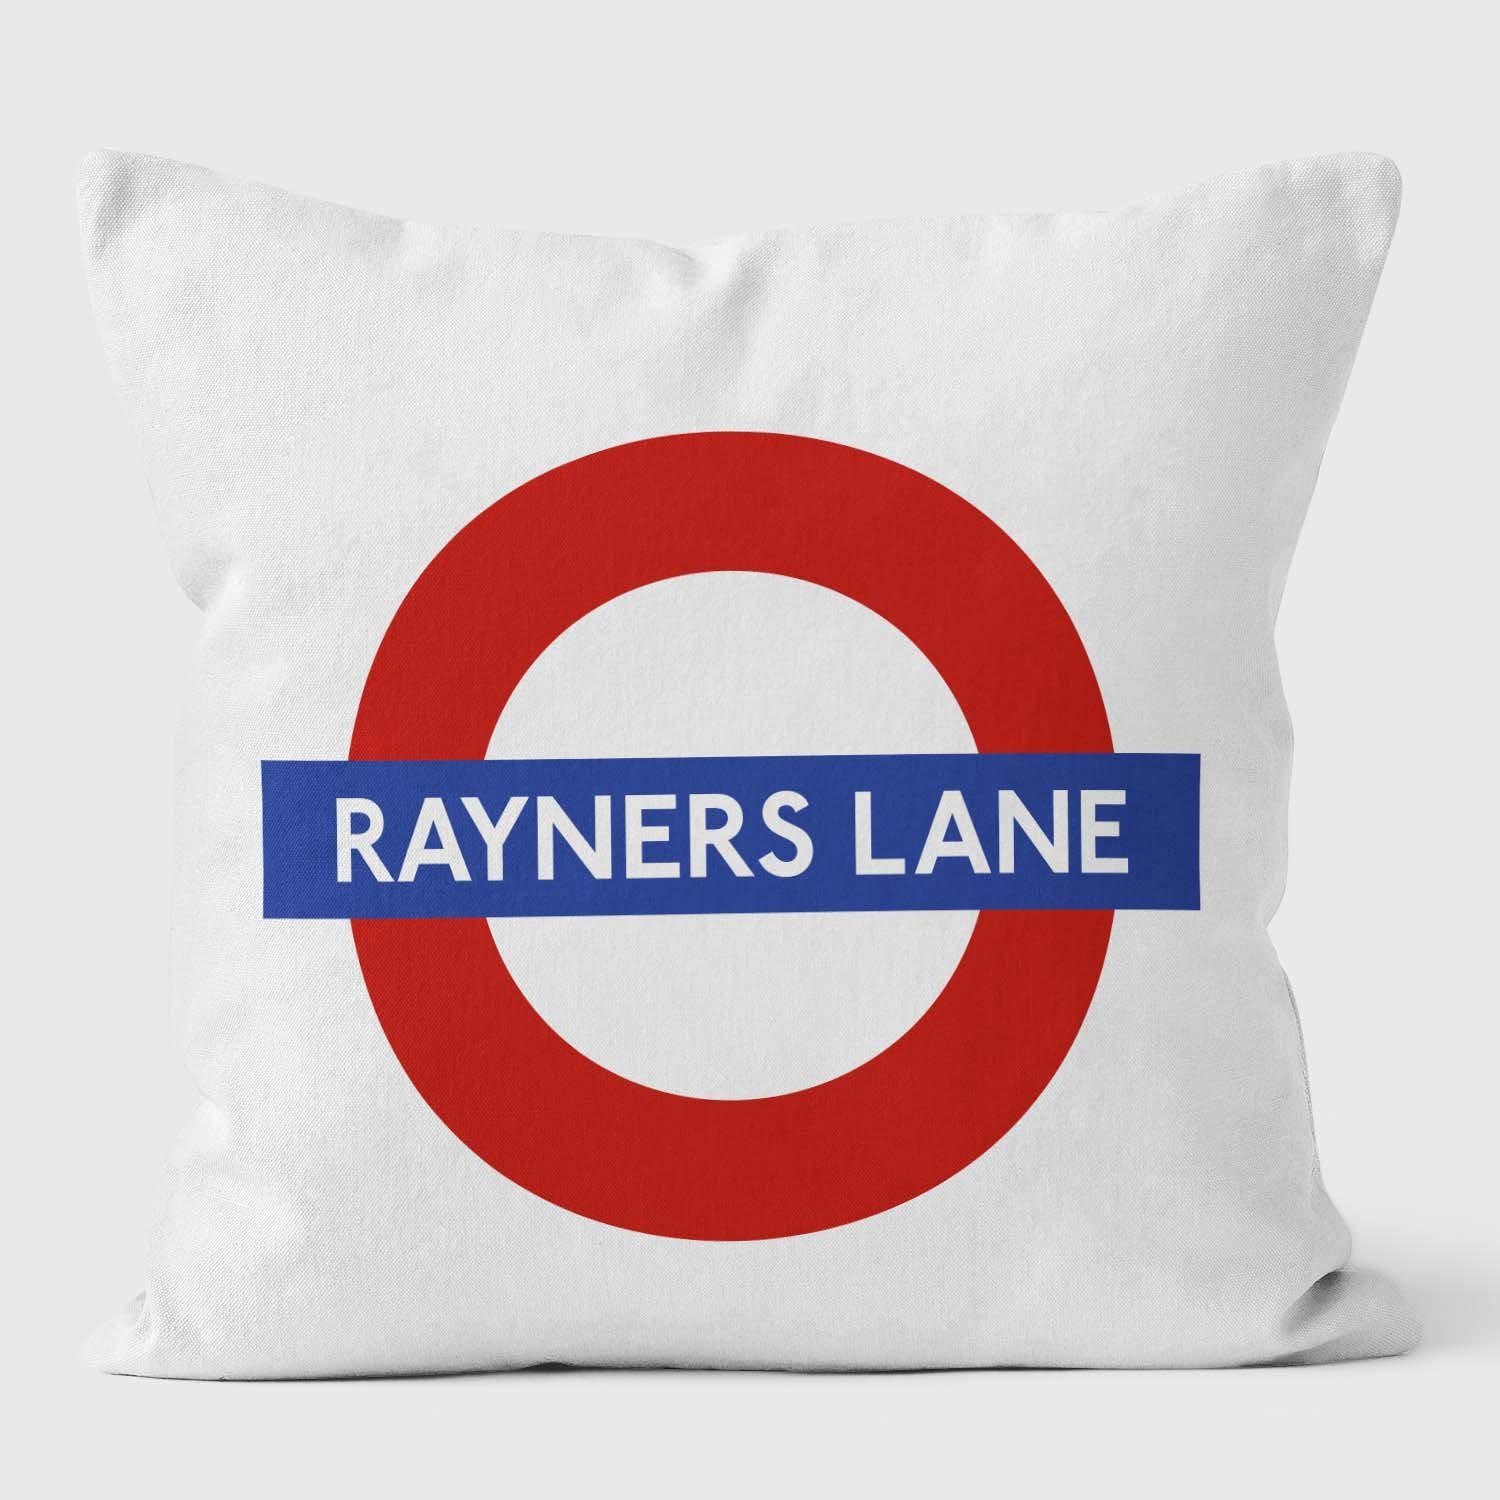 Rayners Lane London Underground Tube Station Roundel Cushion - Handmade Cushions UK - WeLoveCushions